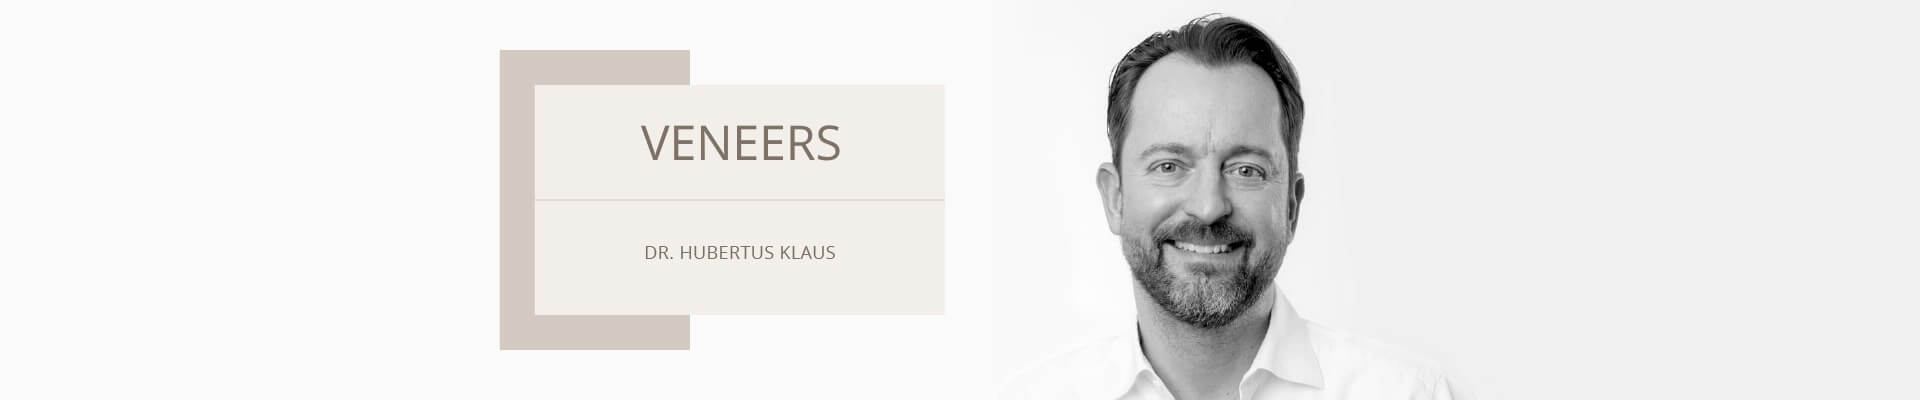 Dr. Hubertus Klaus - Spezialist für Veneers im Dentalzentrum Düsseldorf  